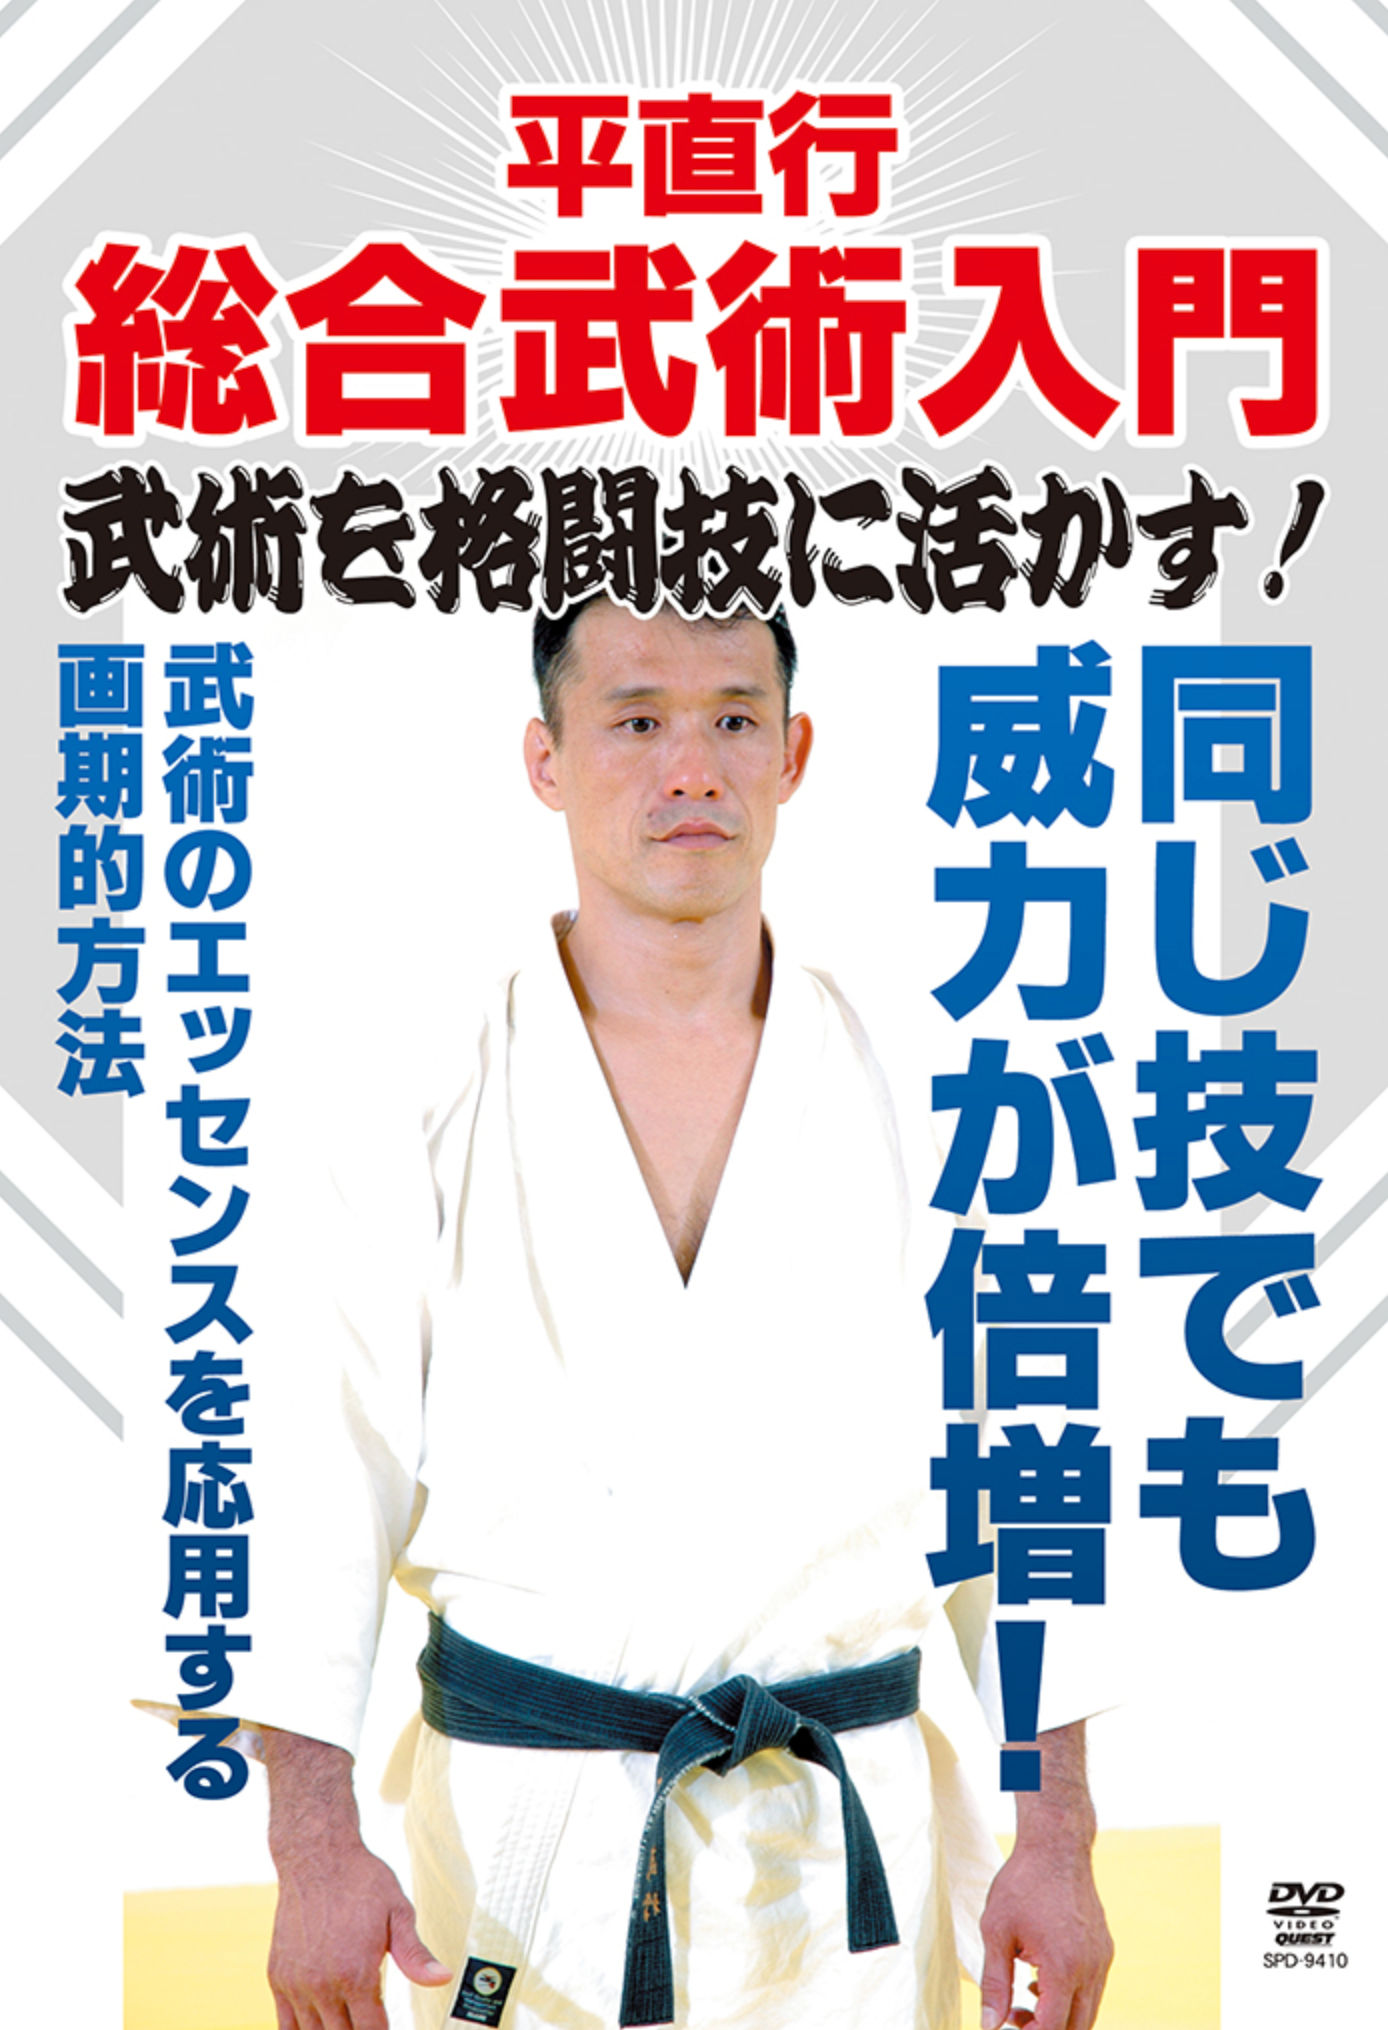 Intro to Martial Arts DVD with Naoyuki Taira - Budovideos Inc